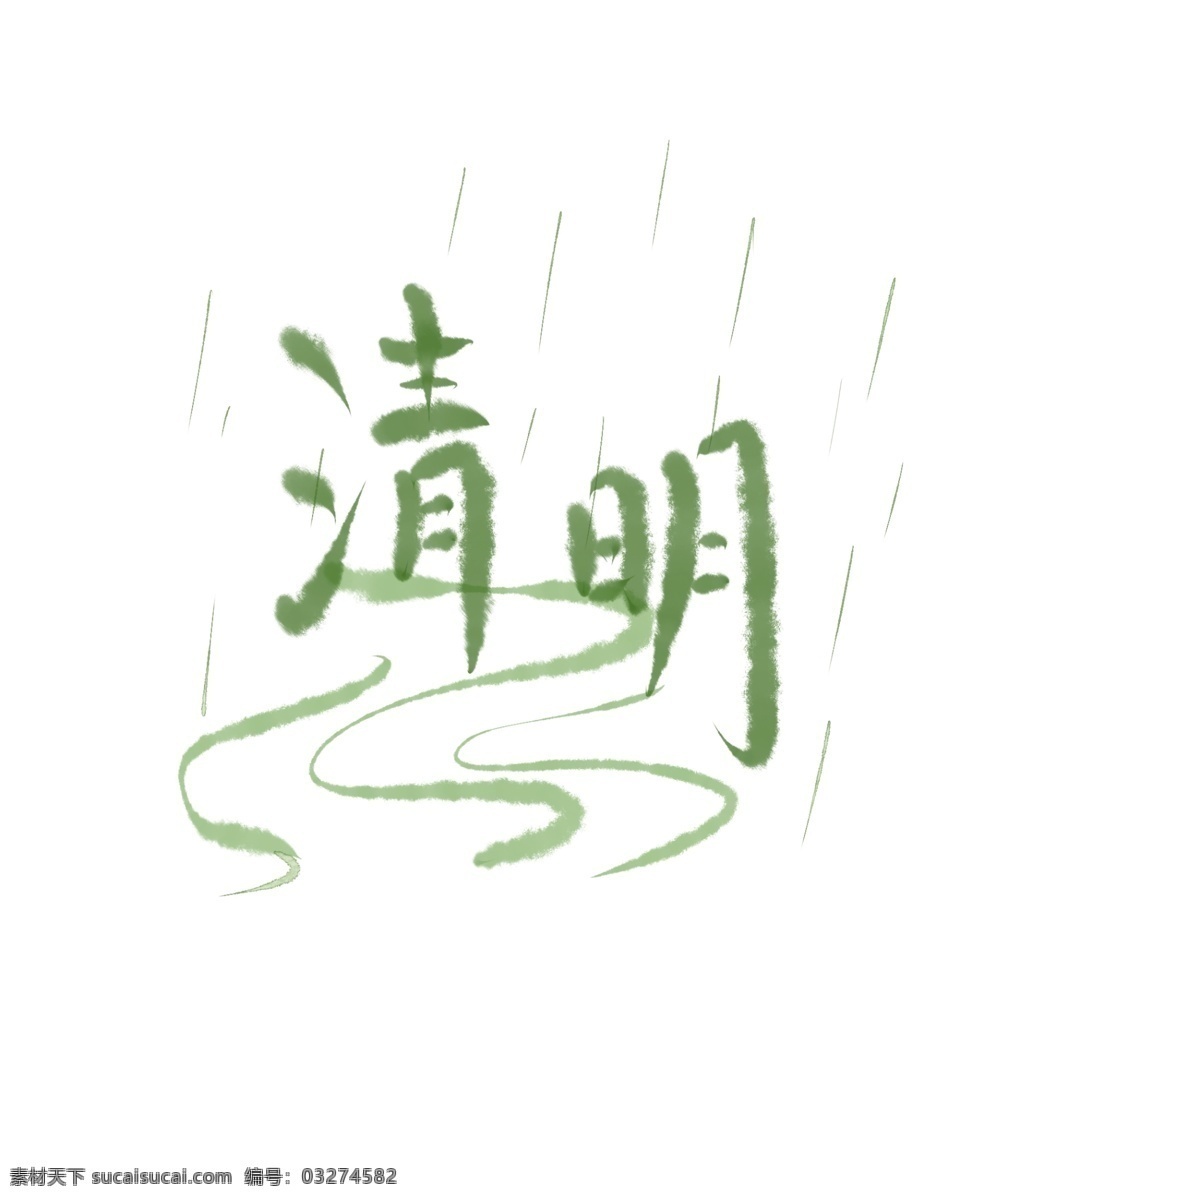 清明节 下雨 河流 字体 清明 艺术字 水墨风格 小清新 简约风 古风 古典 装饰 传统节日